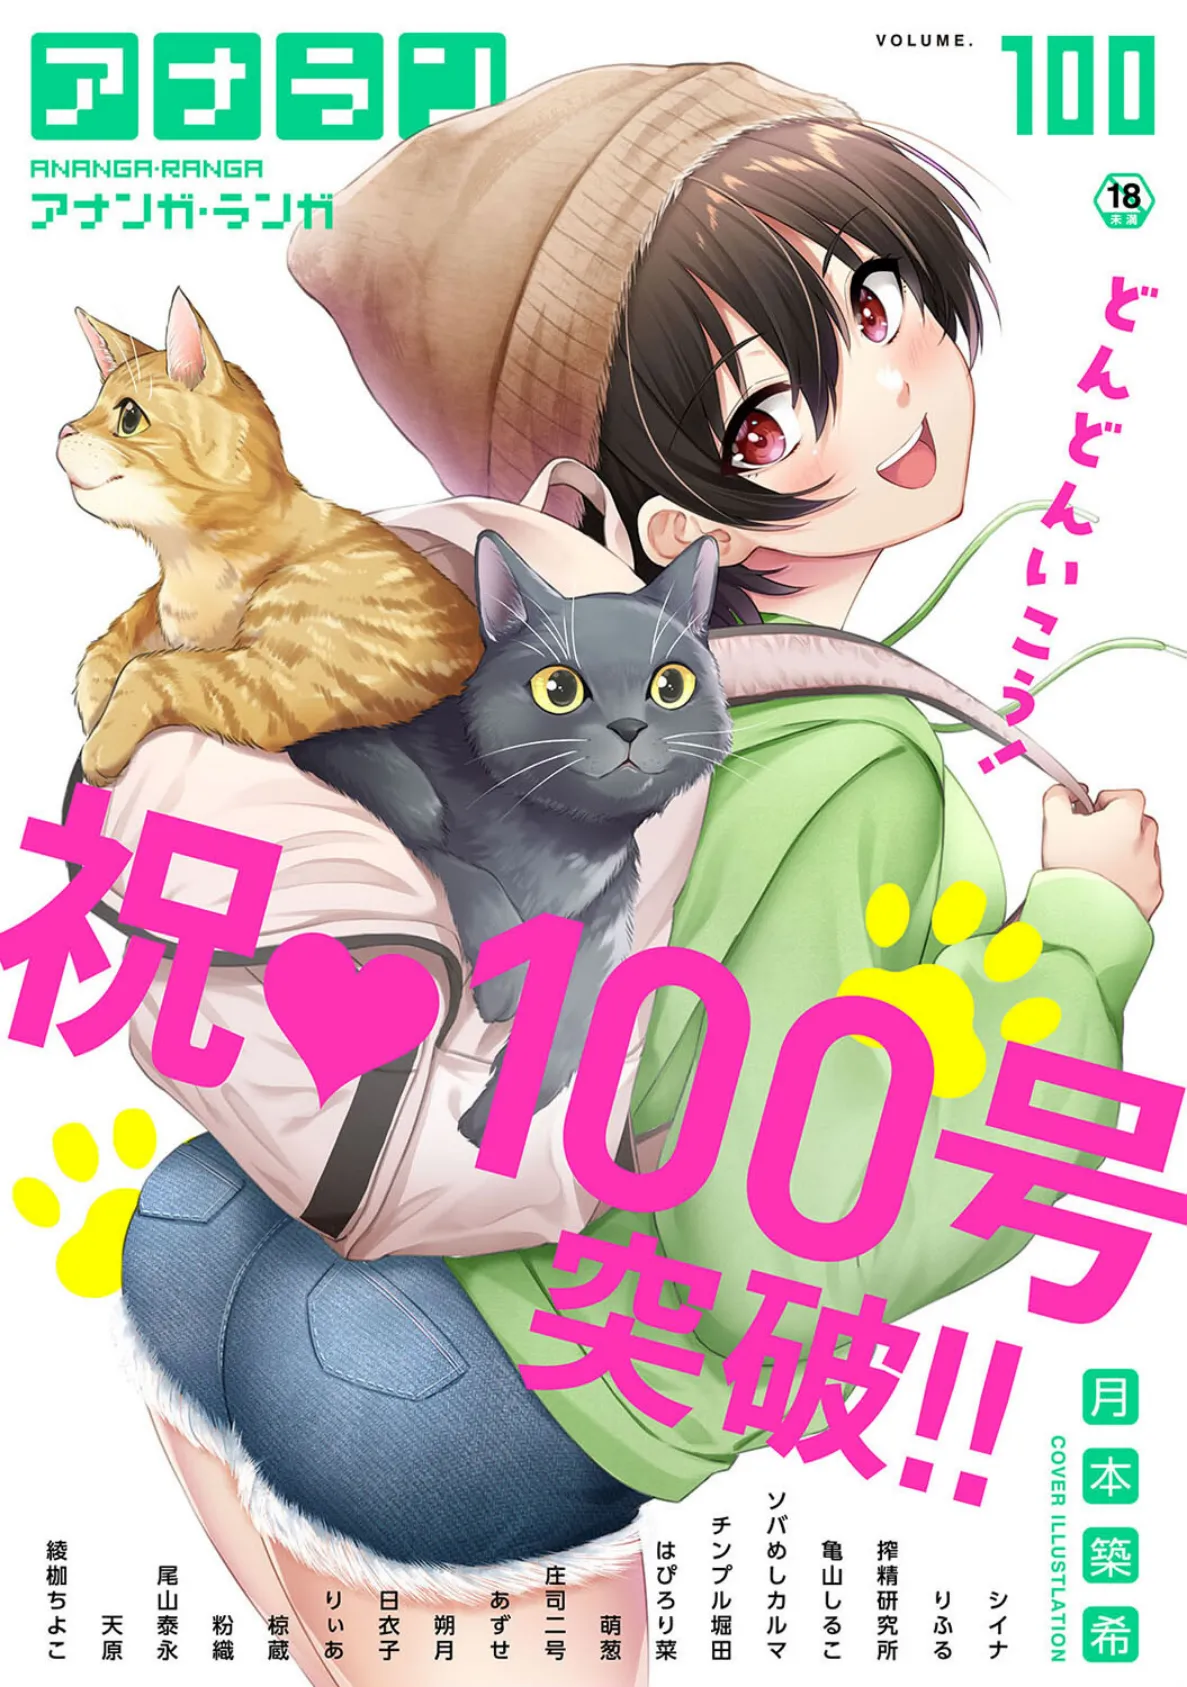 アナンガ・ランガ Vol.100